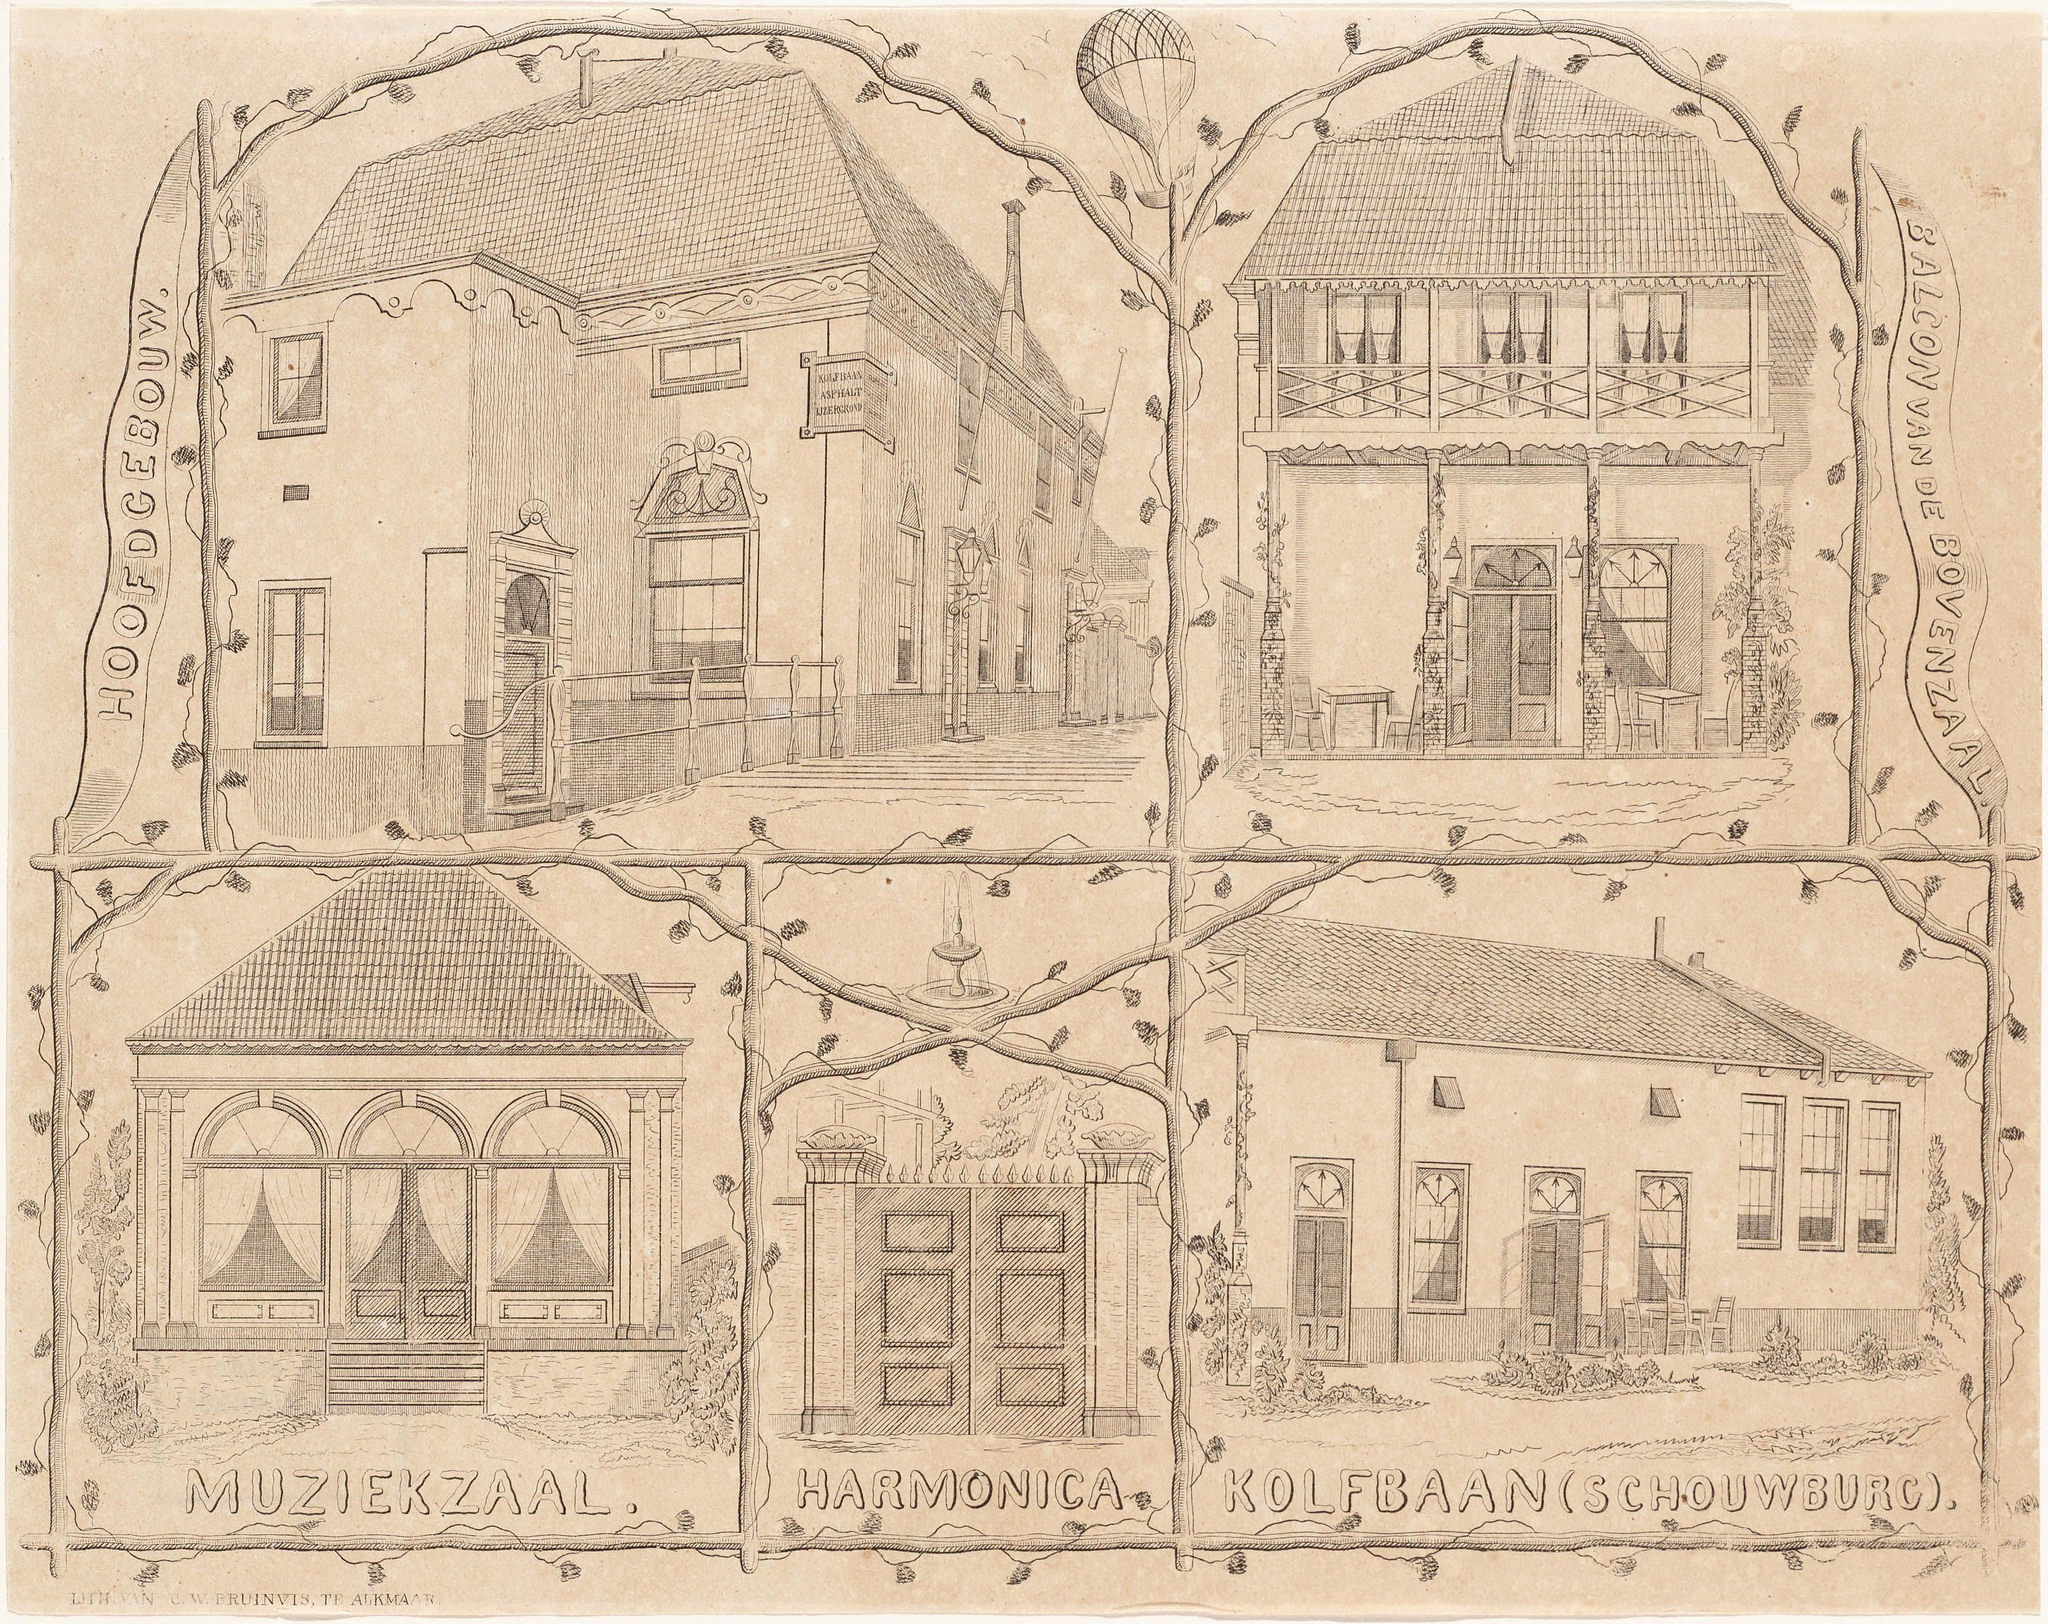 Het gebouw van Harmonica in 1857, tekening gemaakt door Bruinvis